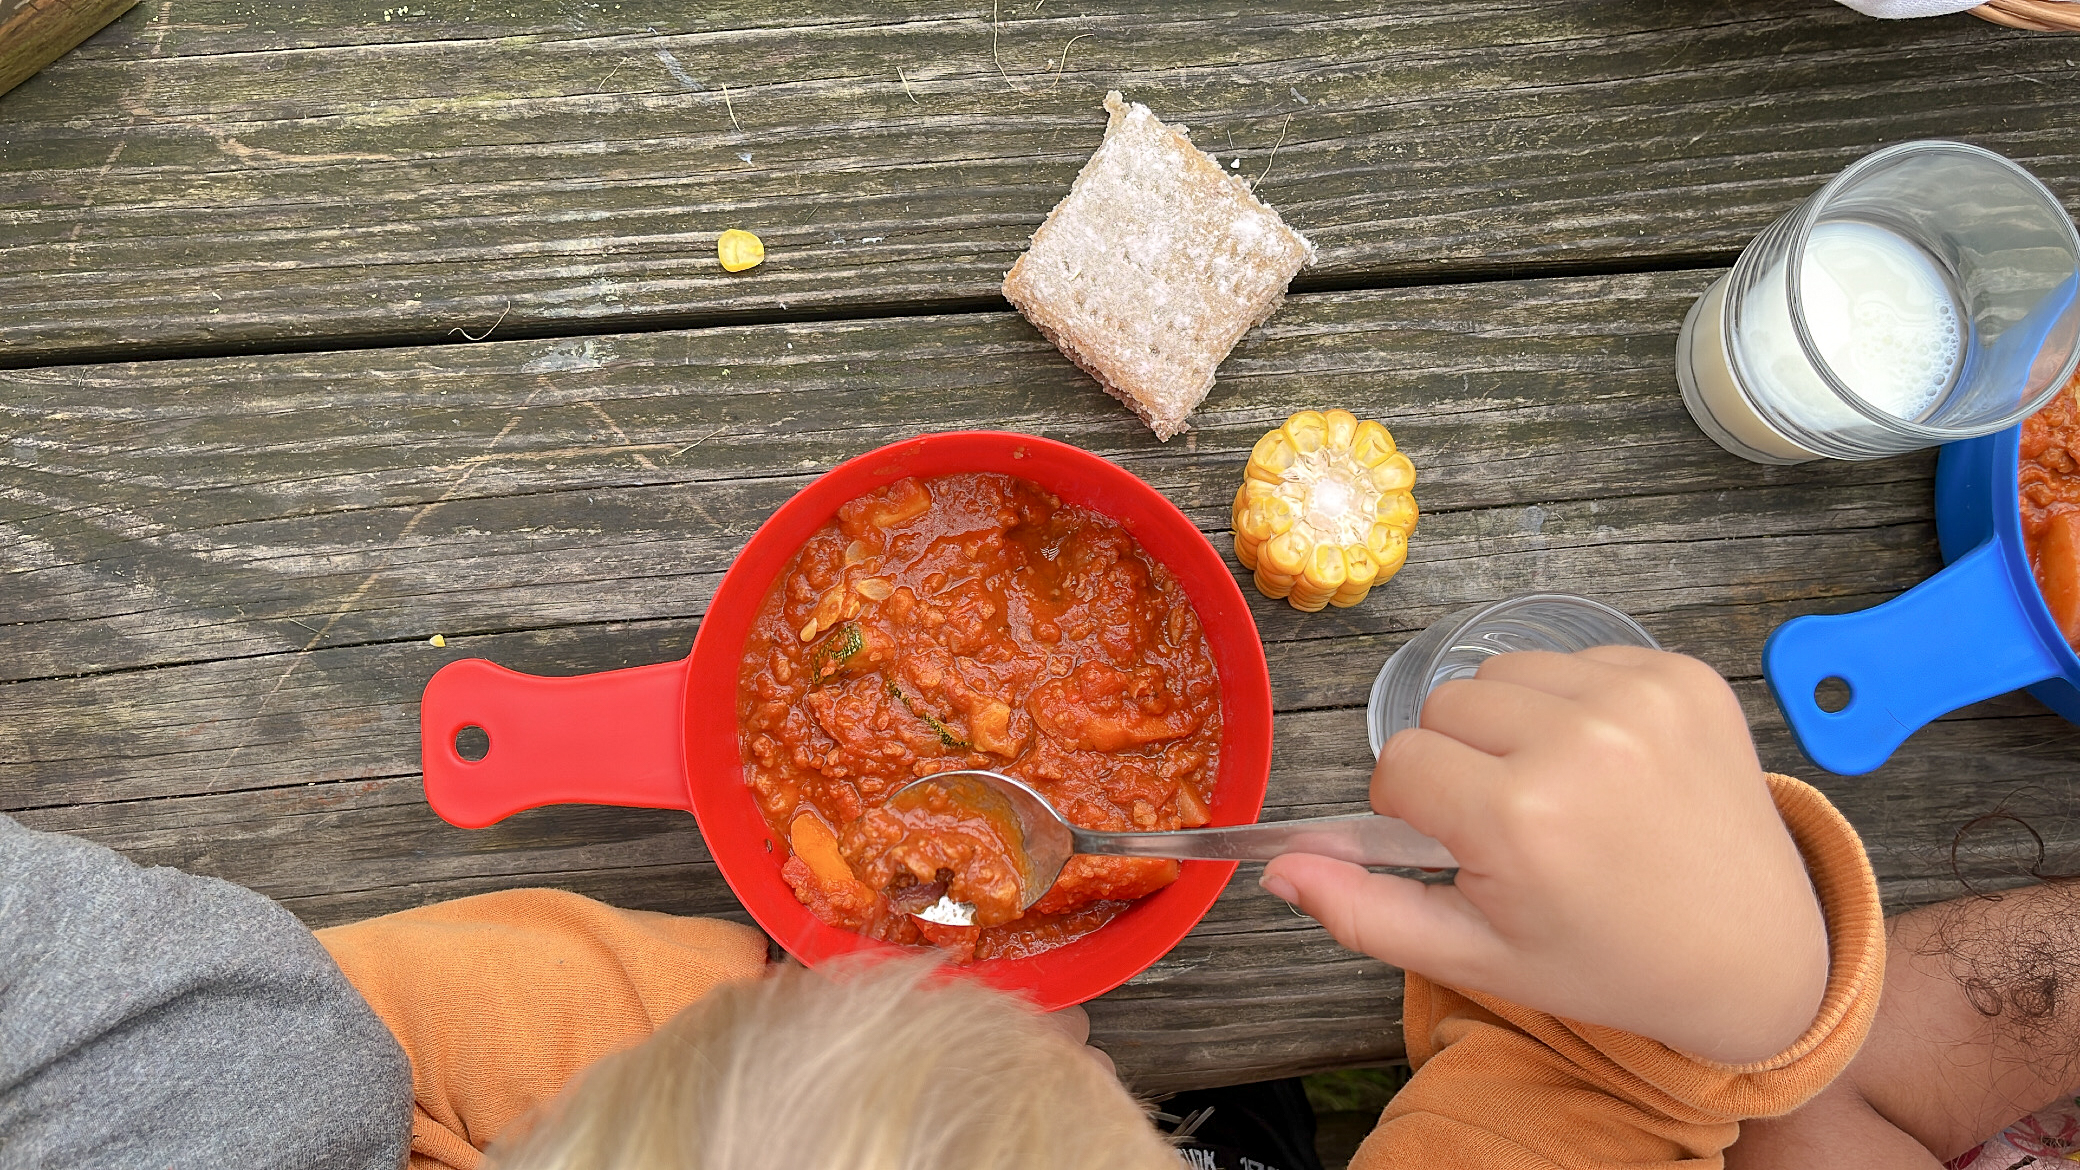 Bilden är tagen ovanifrån och visar en röd platsskål som innehåller mat. Ett barns hand håller i en matsked. Bredvid skålen, på matbordet finns en majskolv, en brödmacka och ett glas mjölk.